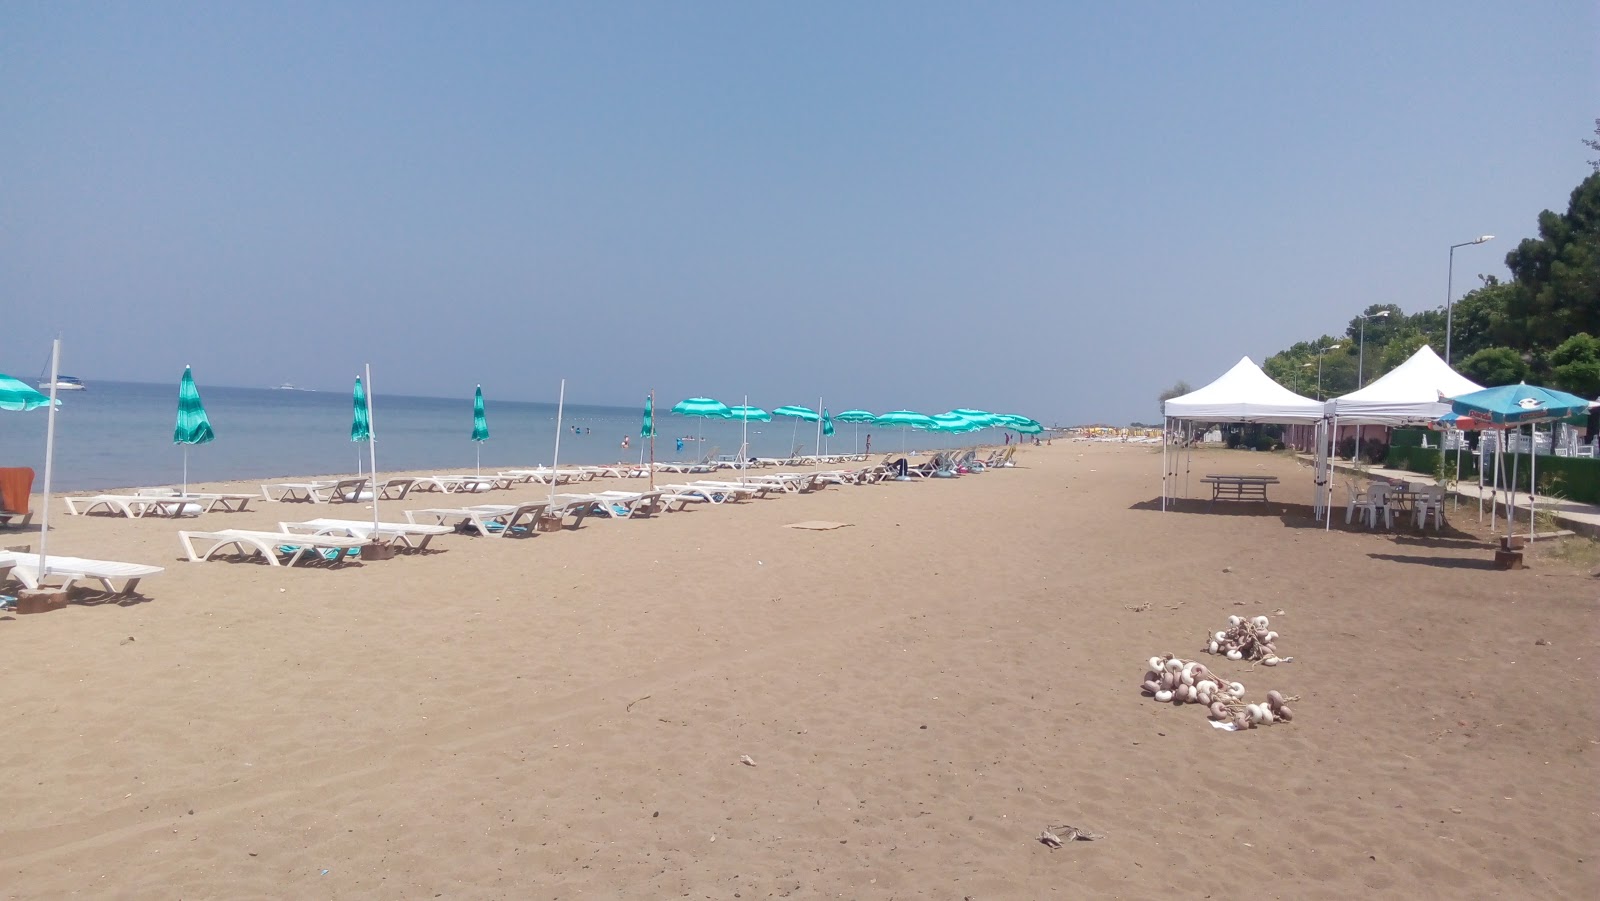 Foto de Yalova Plaji con playa amplia